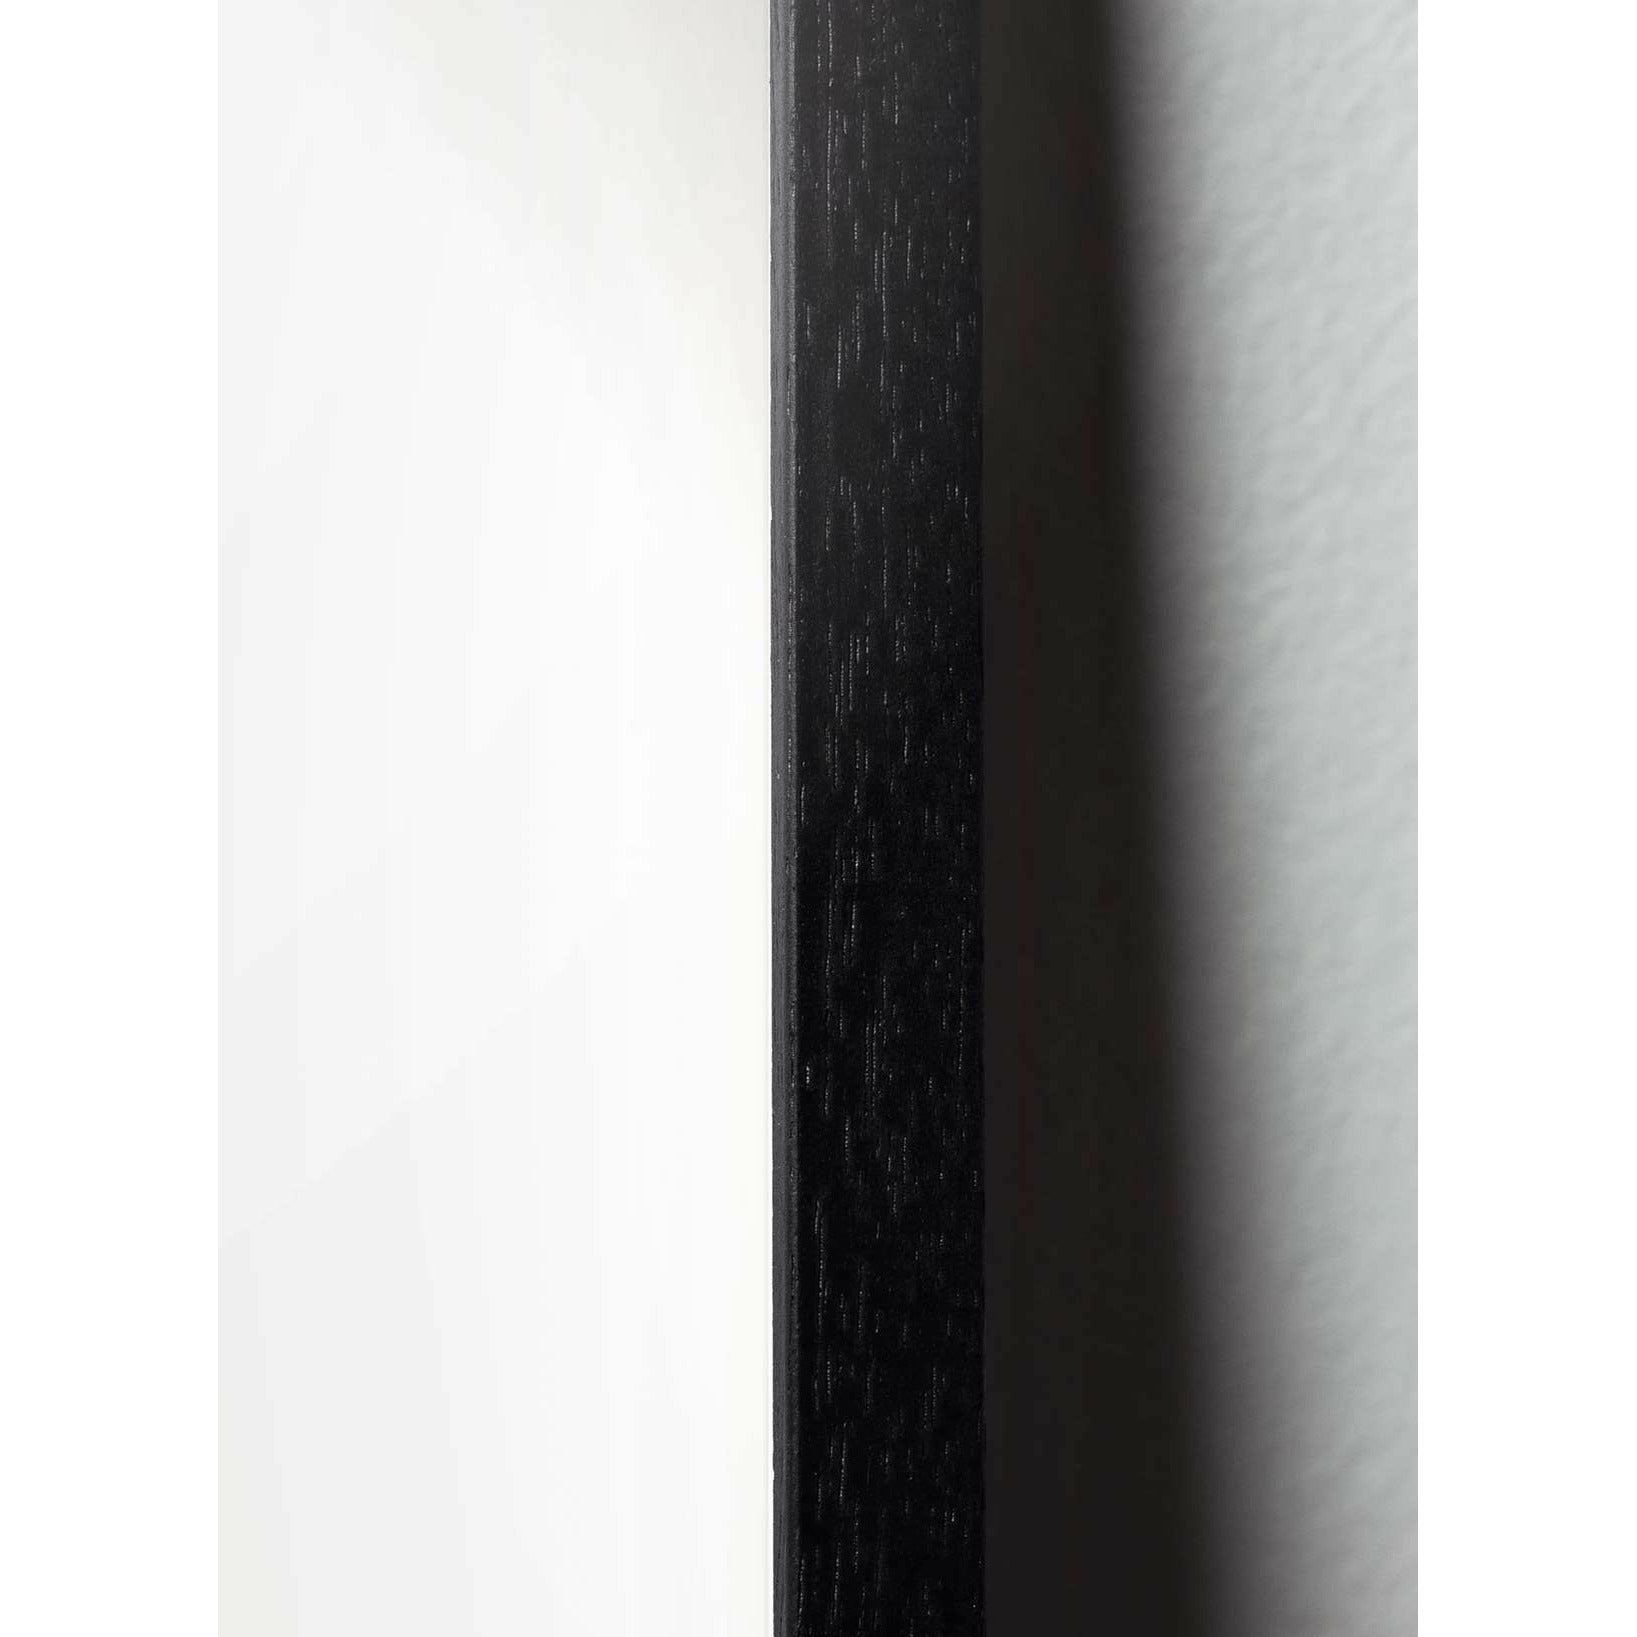 brainchild Affiche classique de cygne, cadre en bois laqué noir 30x40 cm, fond noir / noir